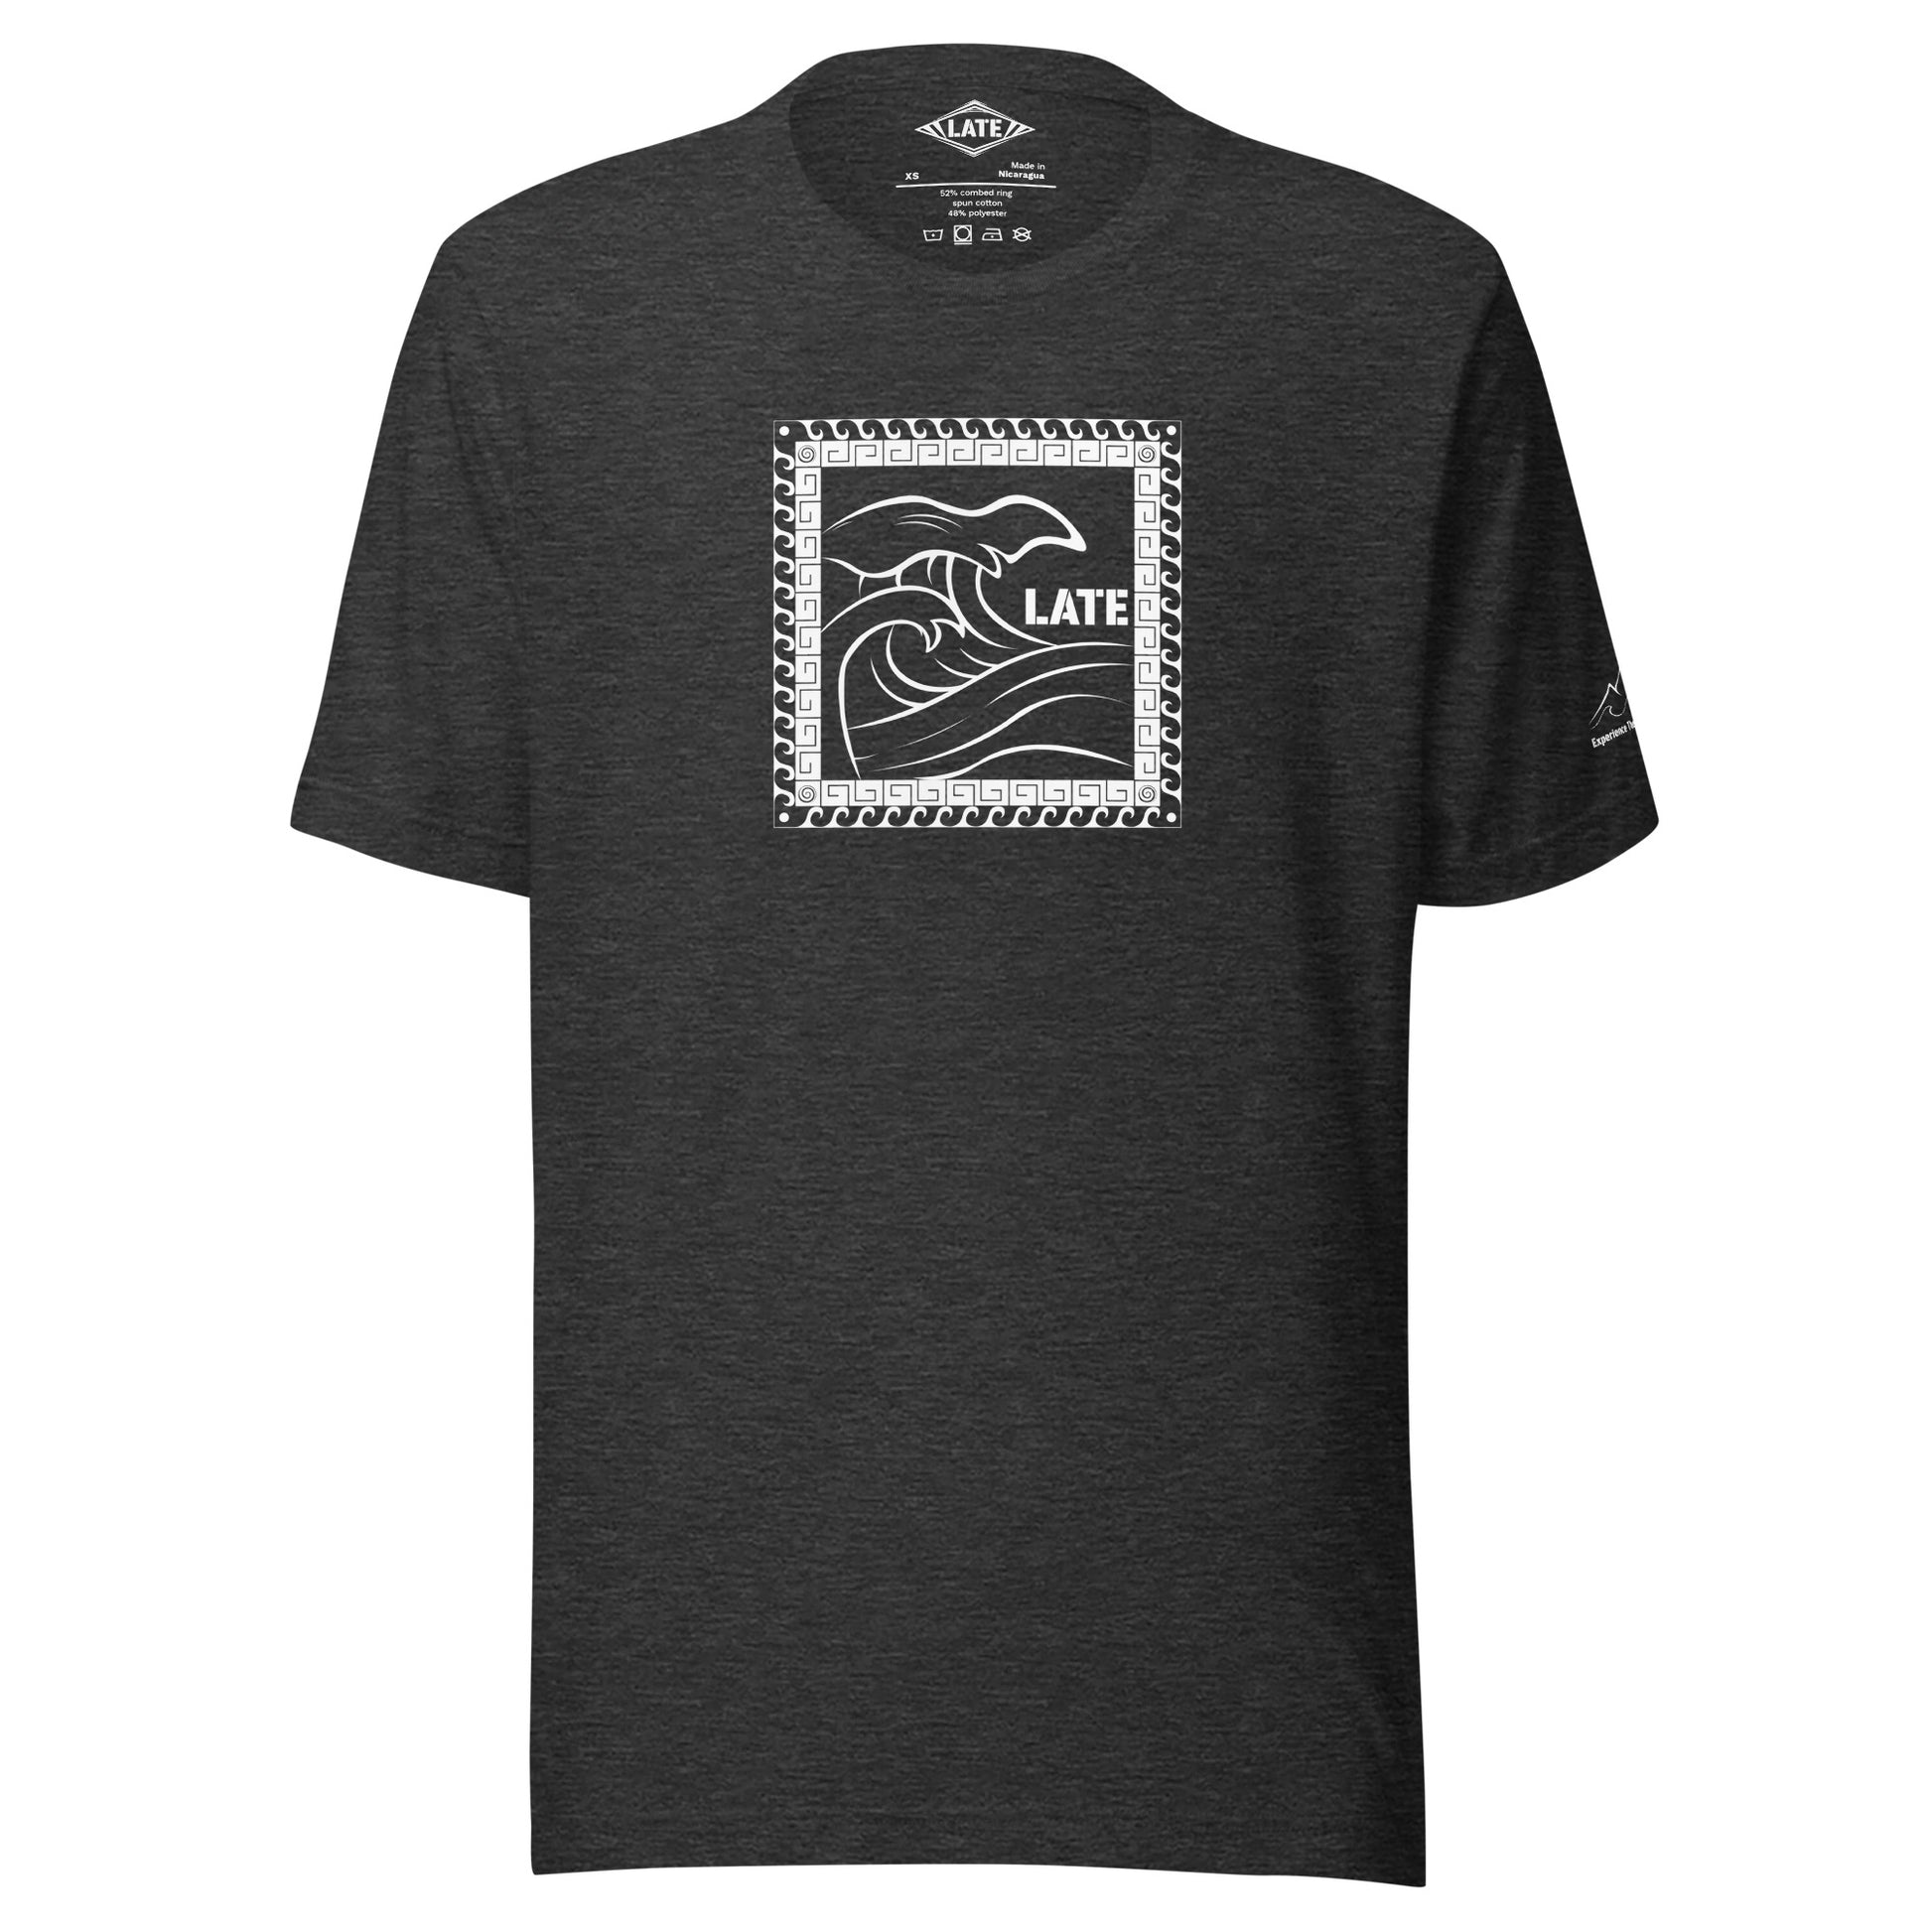 T-Shirt Tricky Wave design vague japonnaise et contour maori texte Late marque de vetement de surf. Tshirt unisex couleur gris foncé